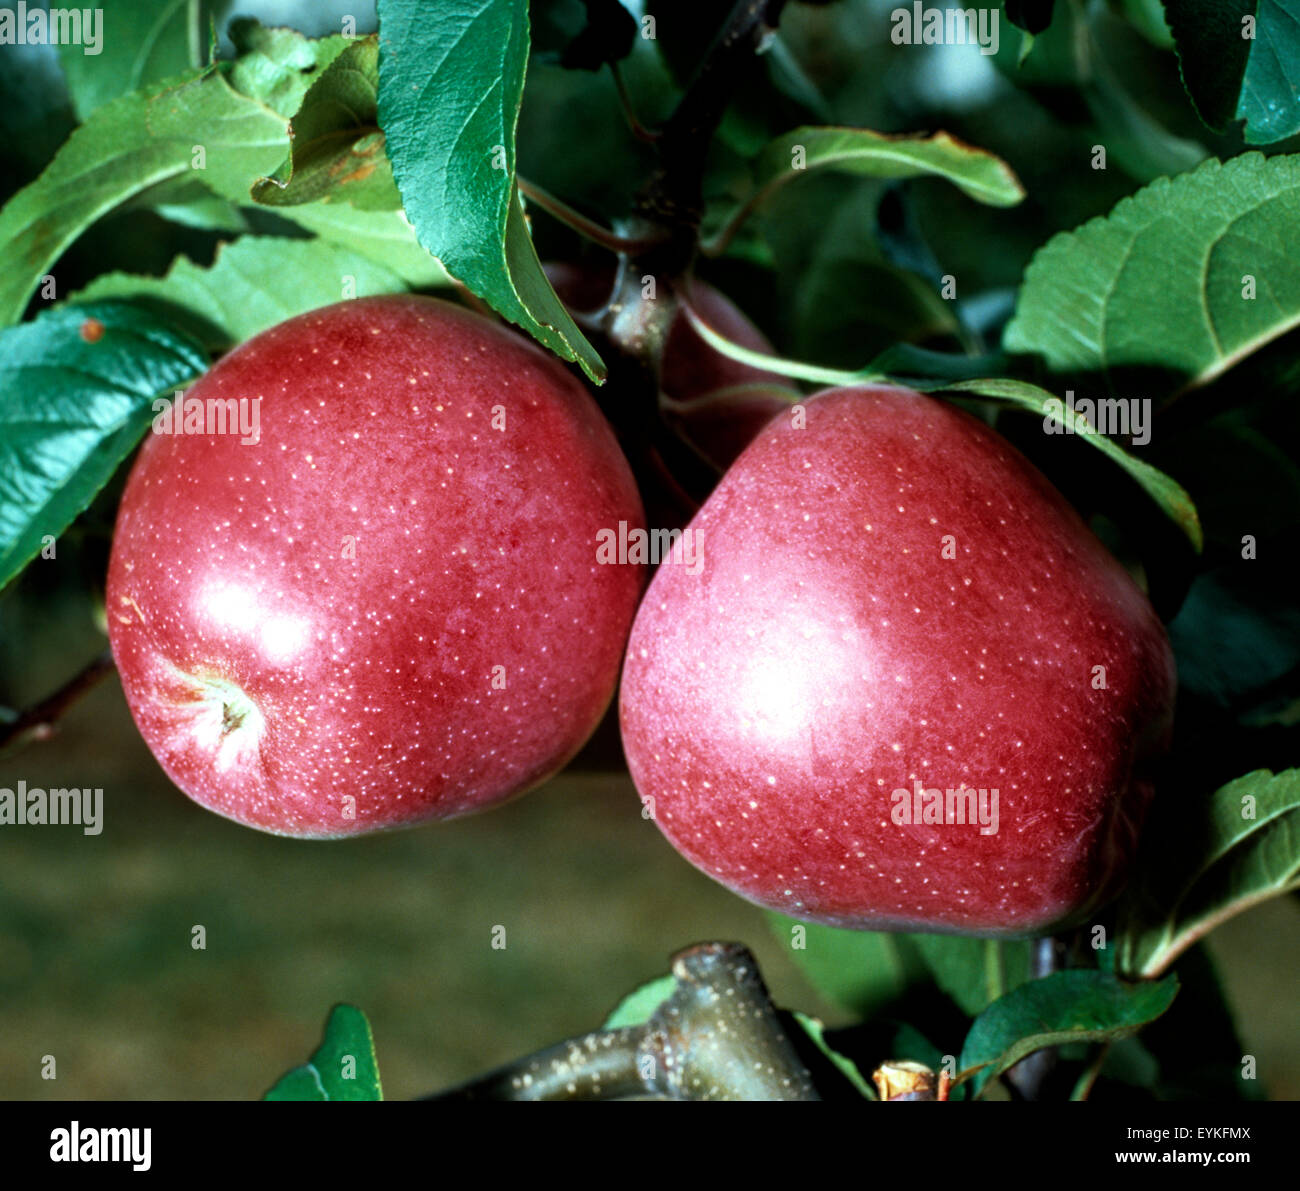 Gloster; Apfel; Apfelsorte, Apfel, Kernobst, Obst Stockfotografie - Alamy